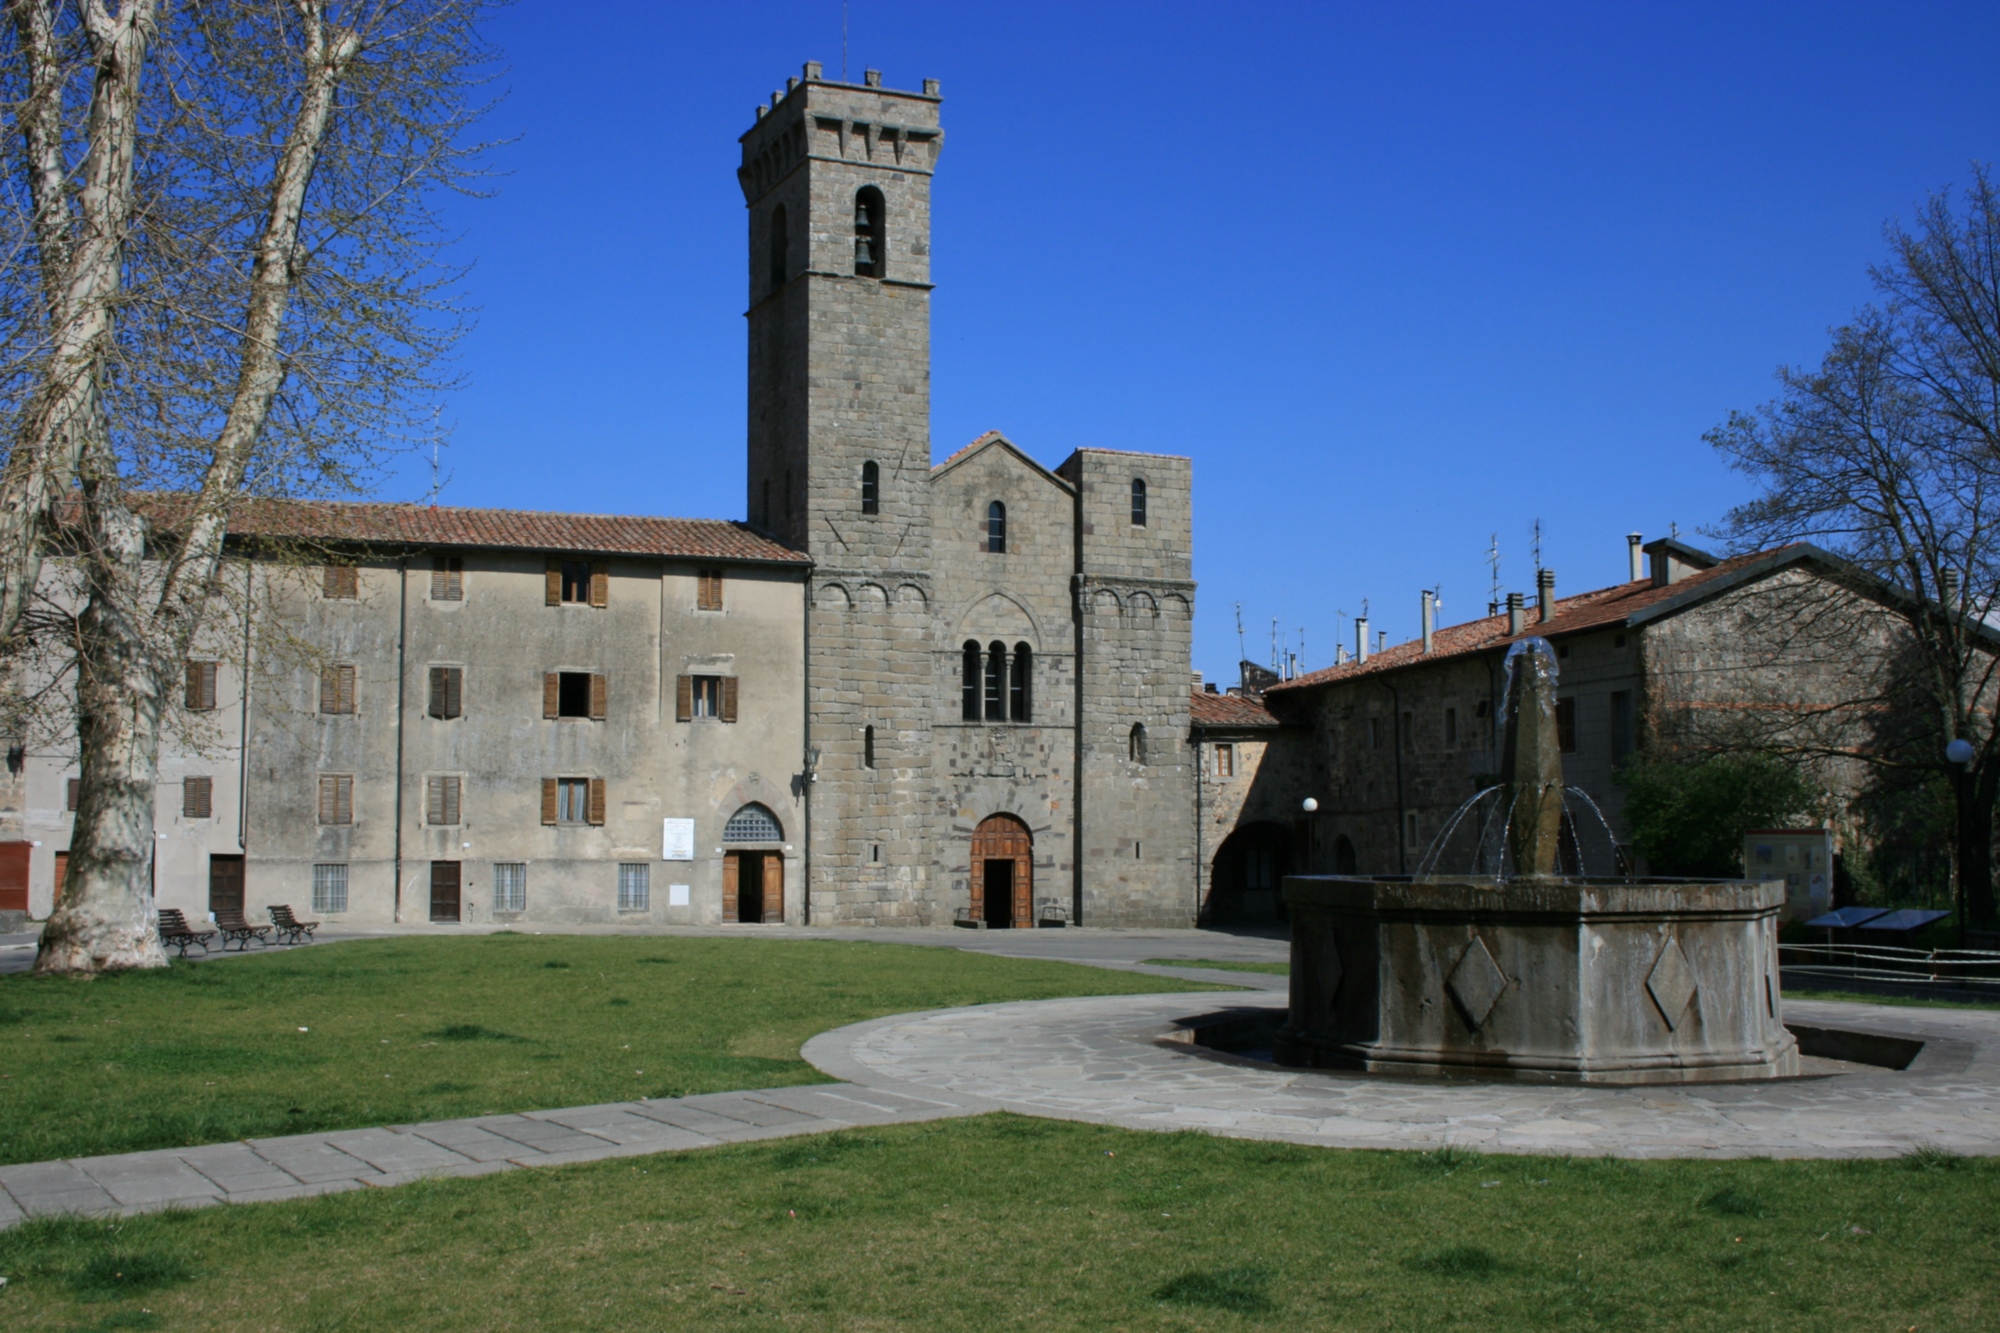 San Salvatore abbey in Abbadia San Salvatore